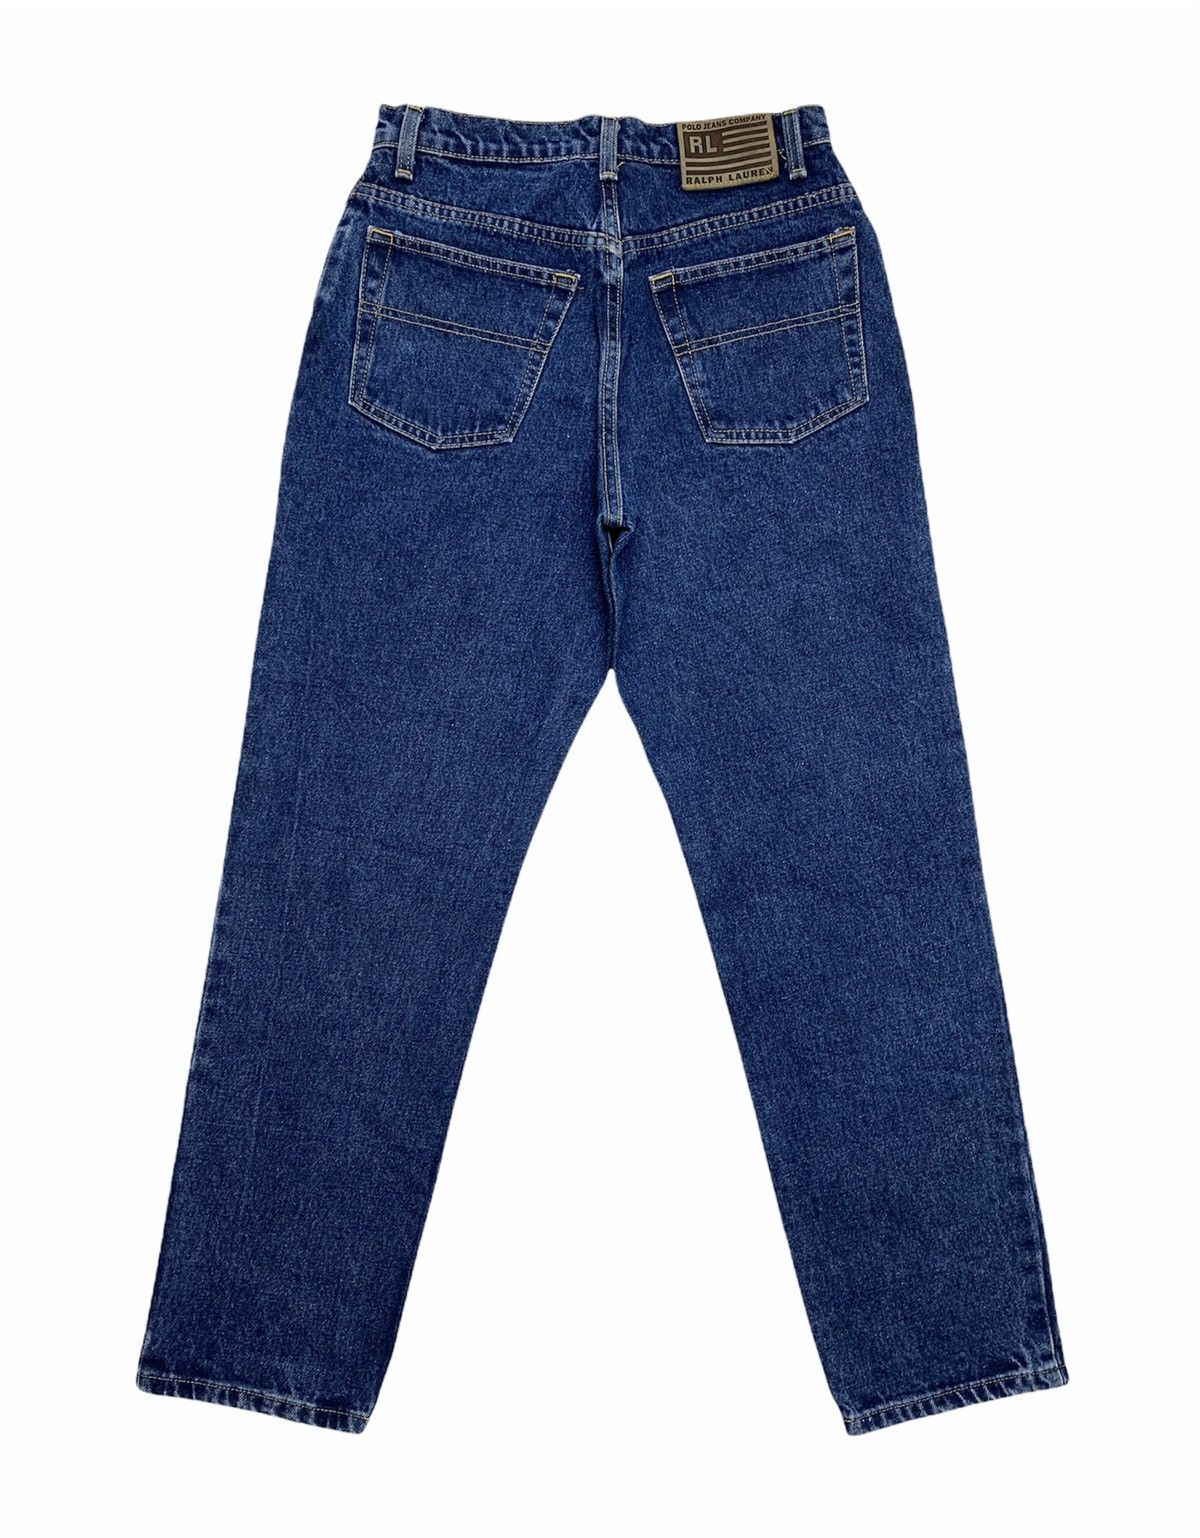 RALPH LAUREN JEANS Dark Wash Denim Vintage Ralph Lauren Bootcut Jeans Lrl Lauren  Jeans Company Classic 501 Fit Mid High Rise Womens Size 2 